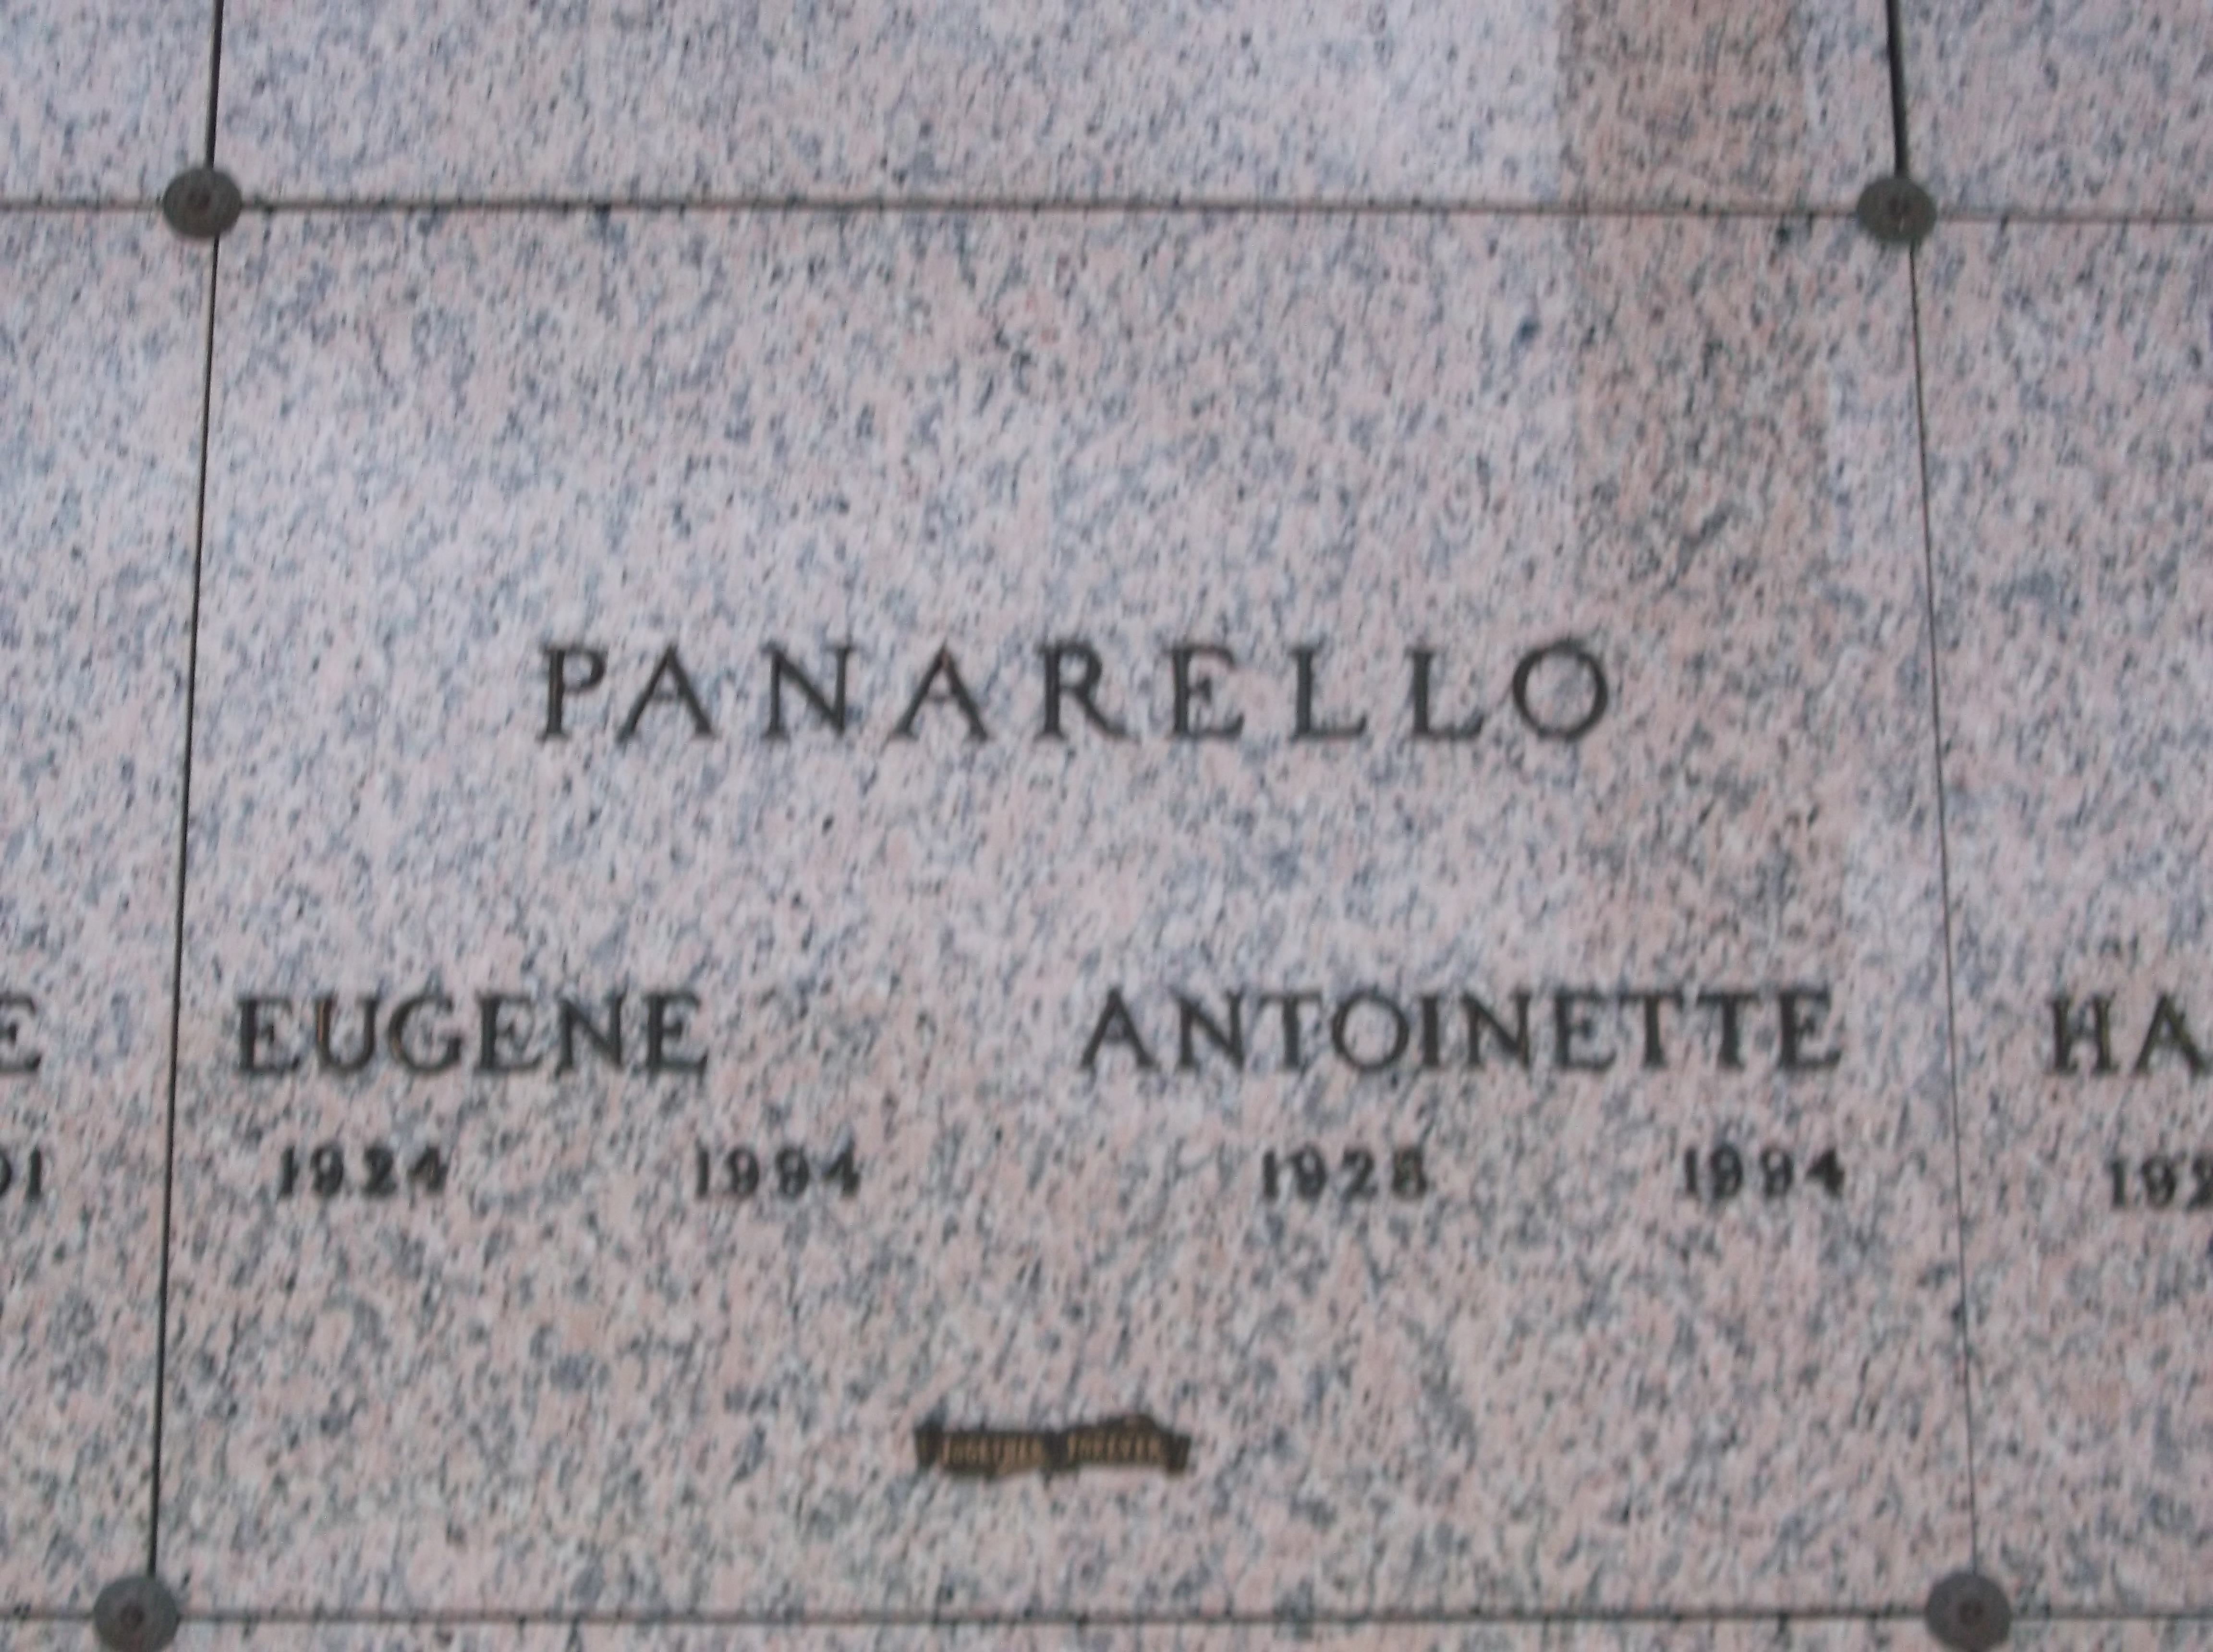 Antoinette Panarello